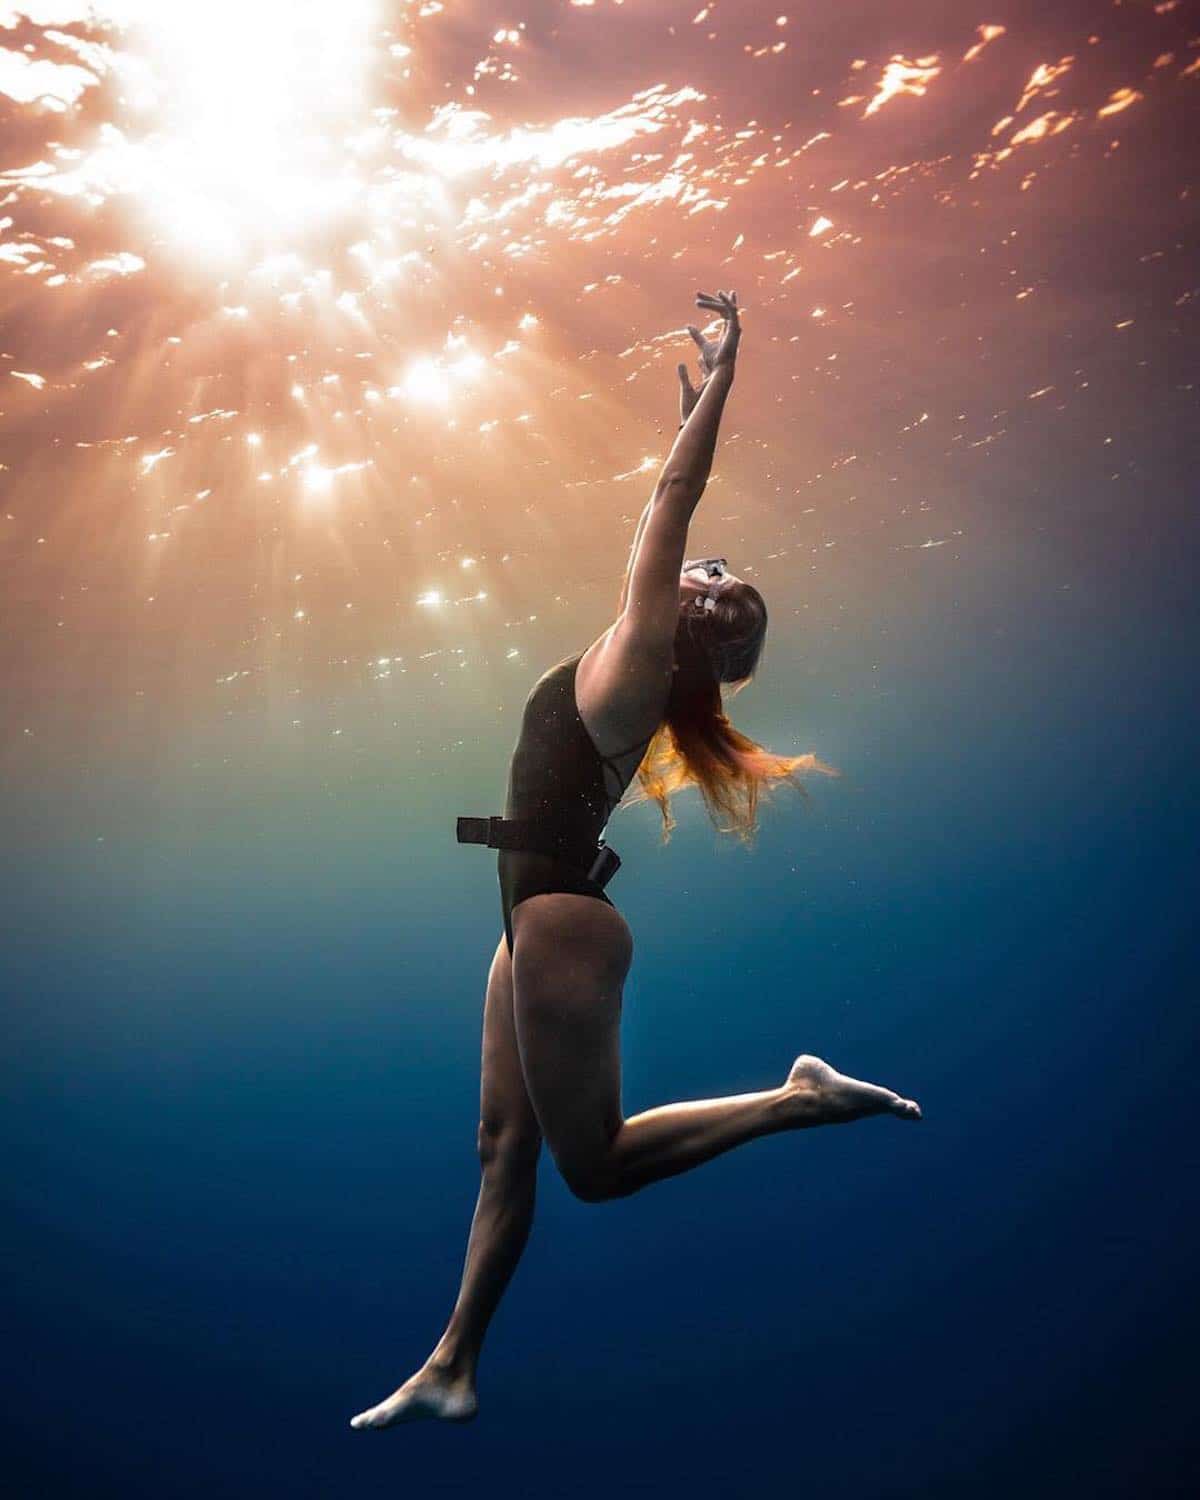 Underwater Ocean Photography Dan Legend